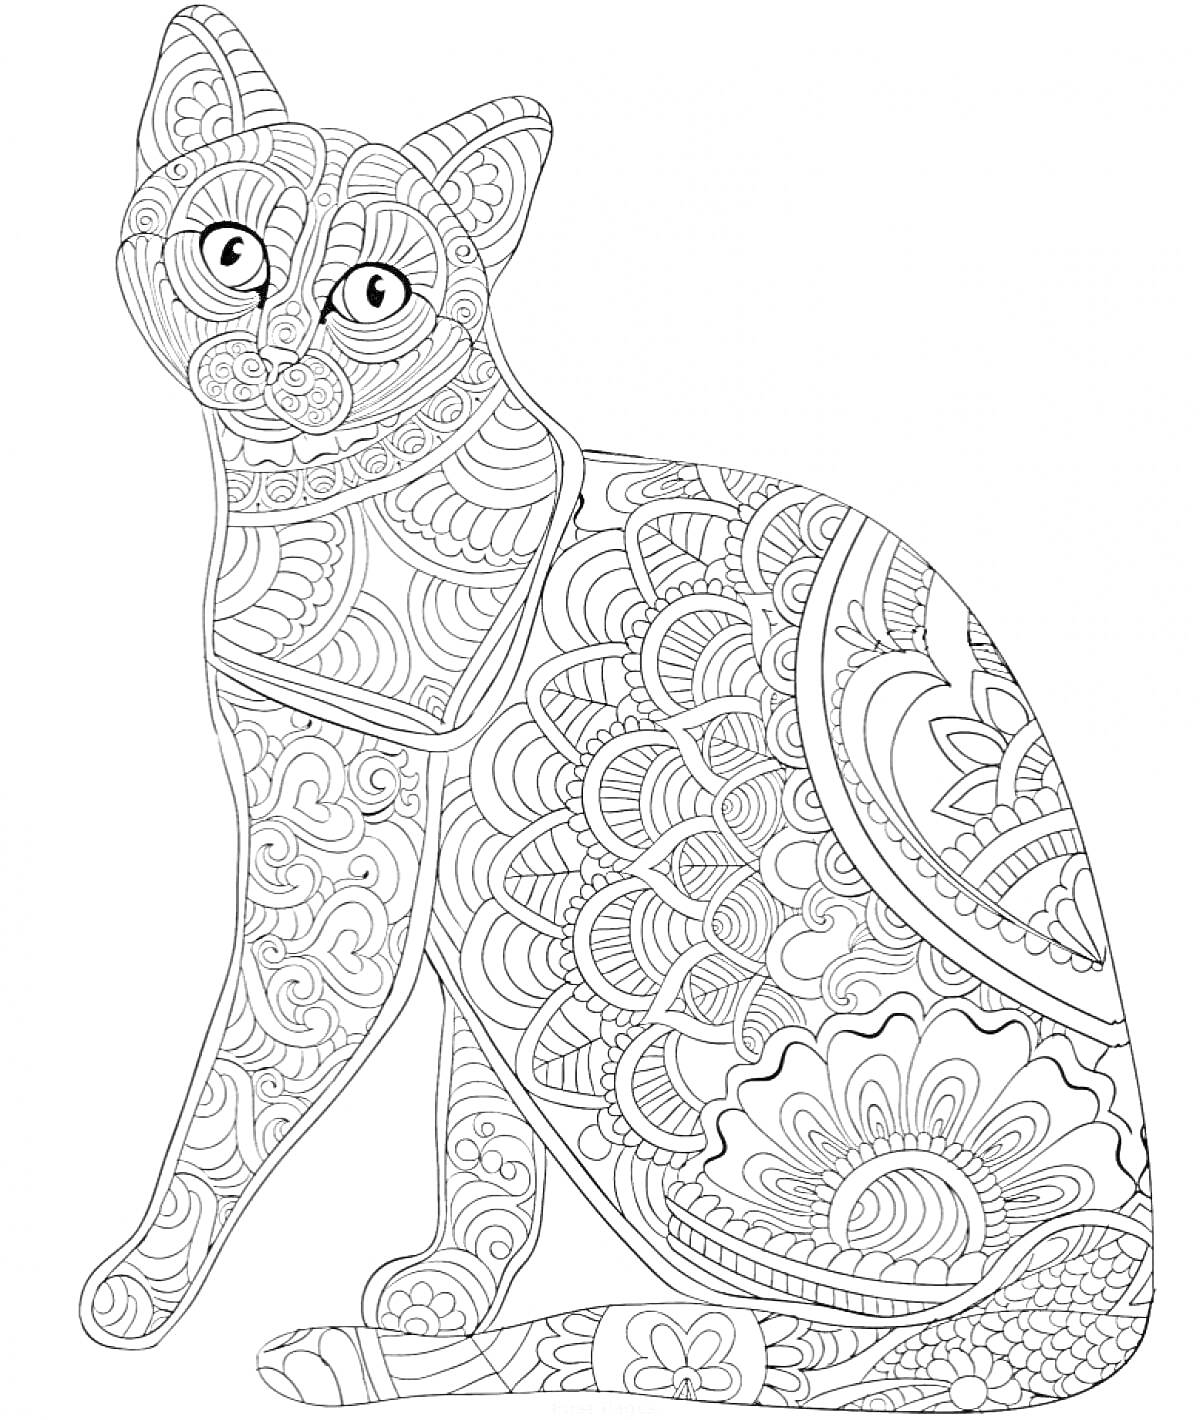 Антистресс раскраска с кошкой, со сложными узорами, включающими завитки, цветочные элементы и геометрические фигуры